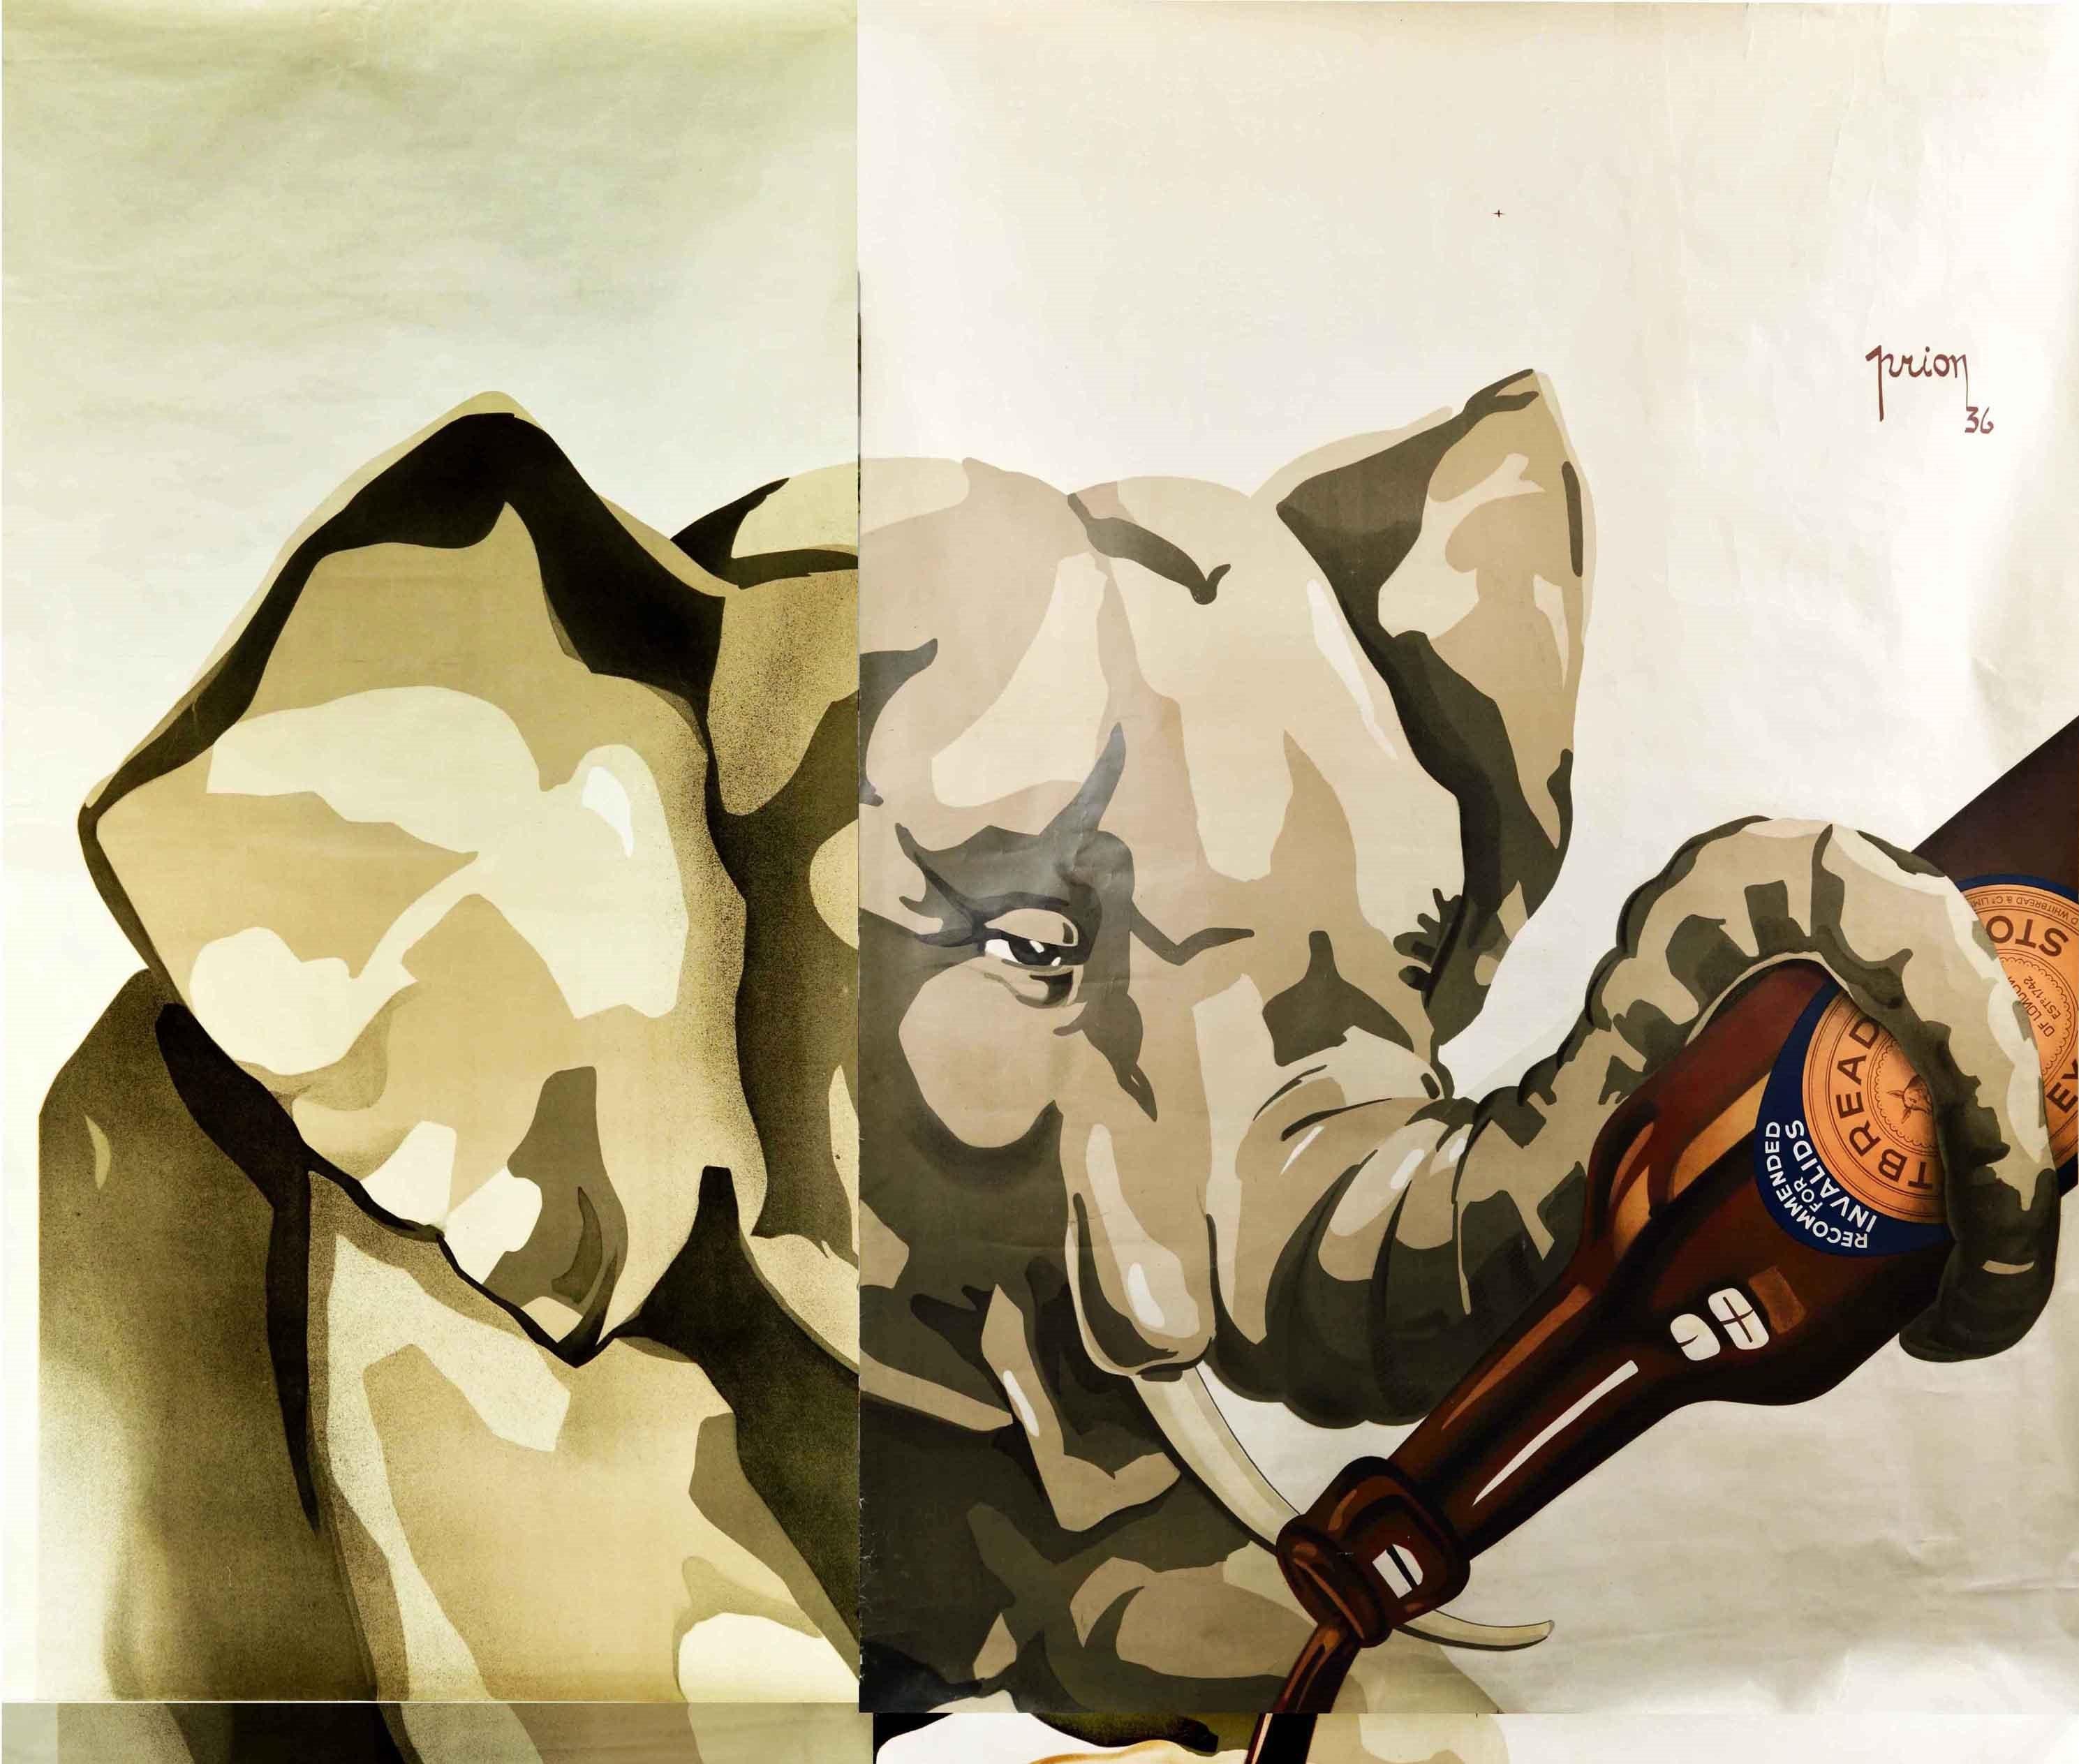 Affiche publicitaire vintage originale pour la Whitbread Stout présentant une illustration amusante d'un jeune éléphant tenant une bouteille de Whitbread stout dans sa trompe et versant la bière dans un verre de pinte avec le texte en gras en